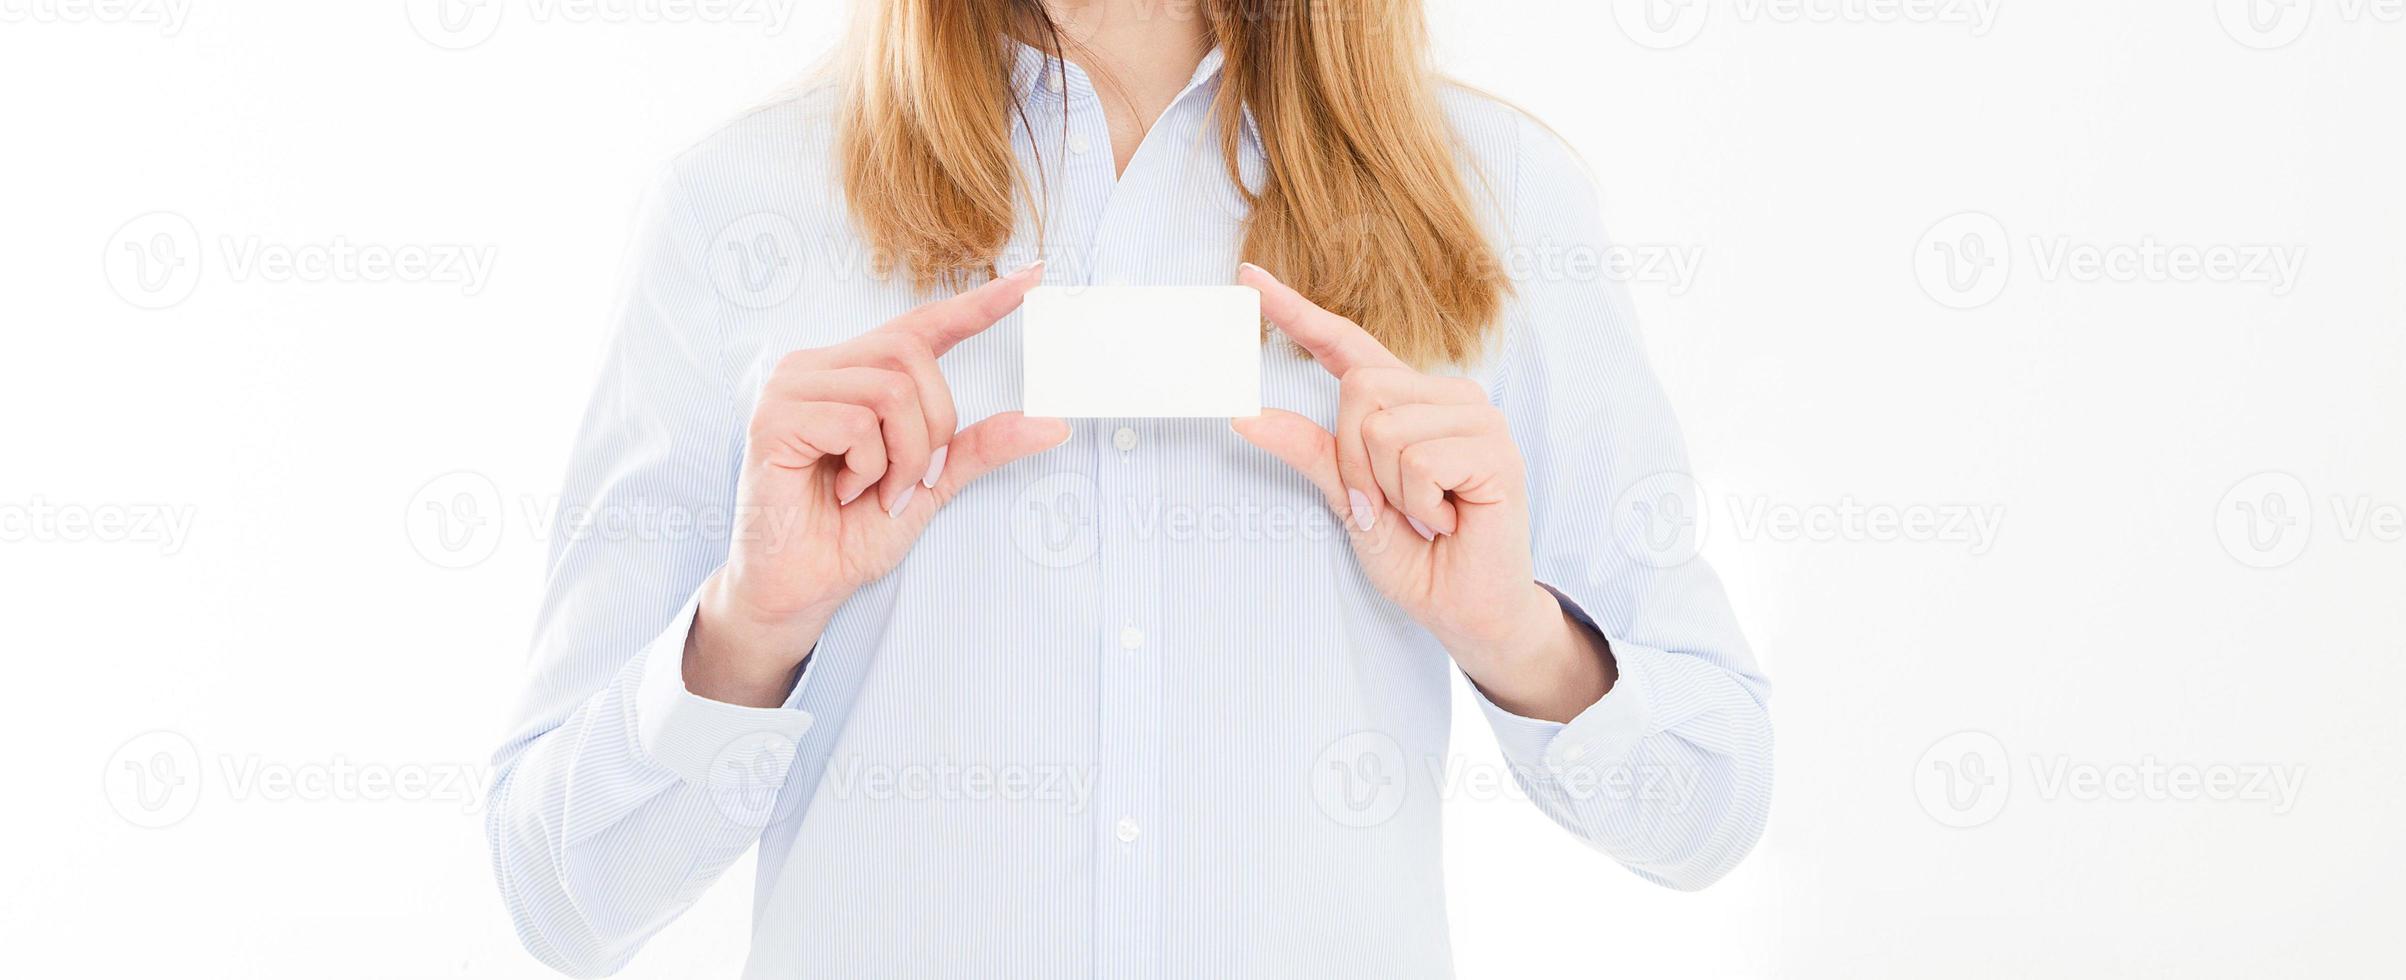 jovem de camisa, segurando o cartão de visita isolado em um fundo branco, cartão de exploração de mão feminina. conceito de negócios. copie o espaço foto